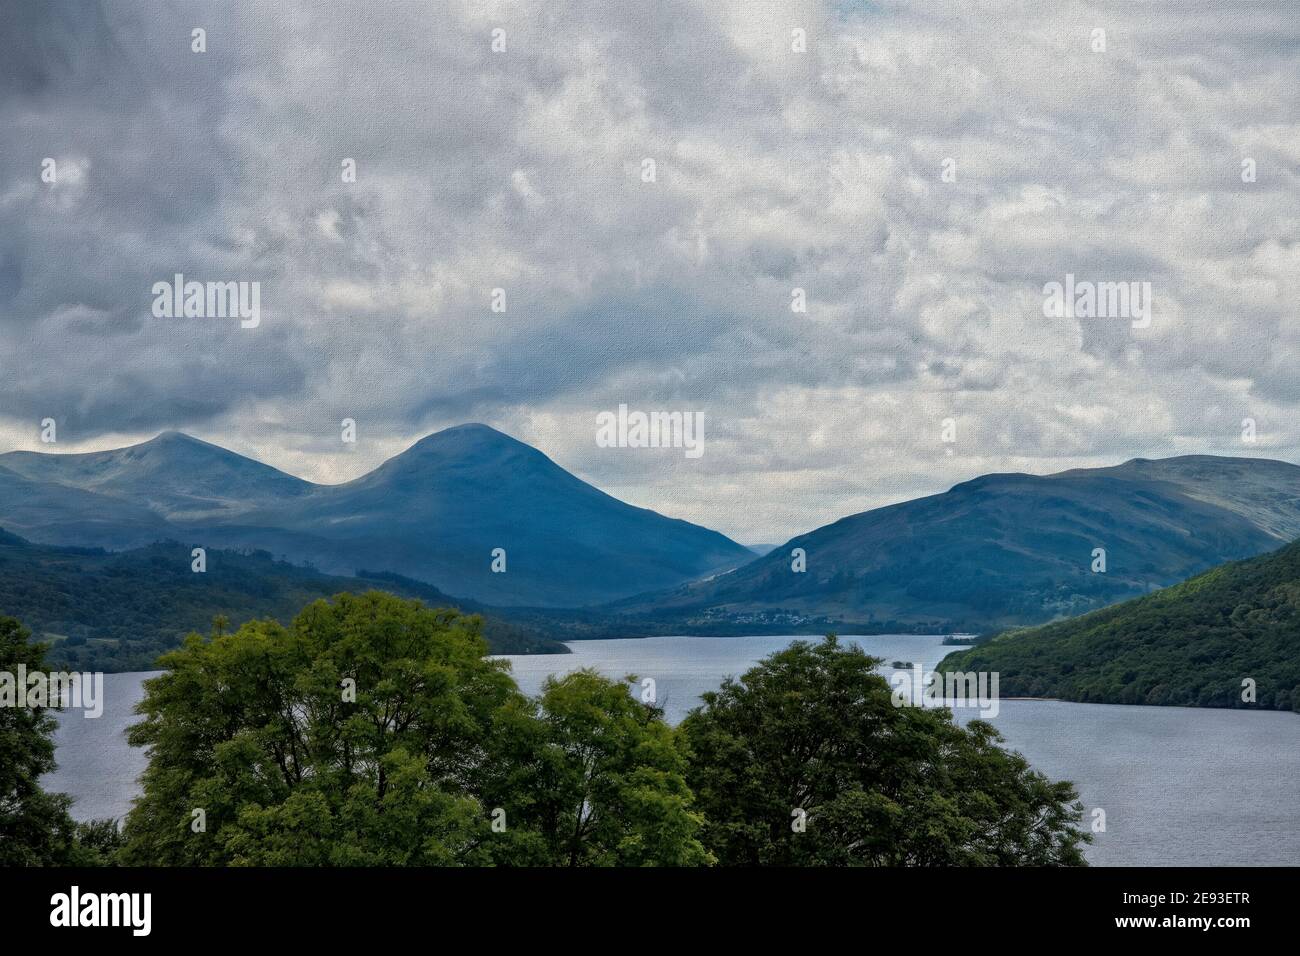 View Across Loch Tay towards Killin, Scotland, UK Stock Photo